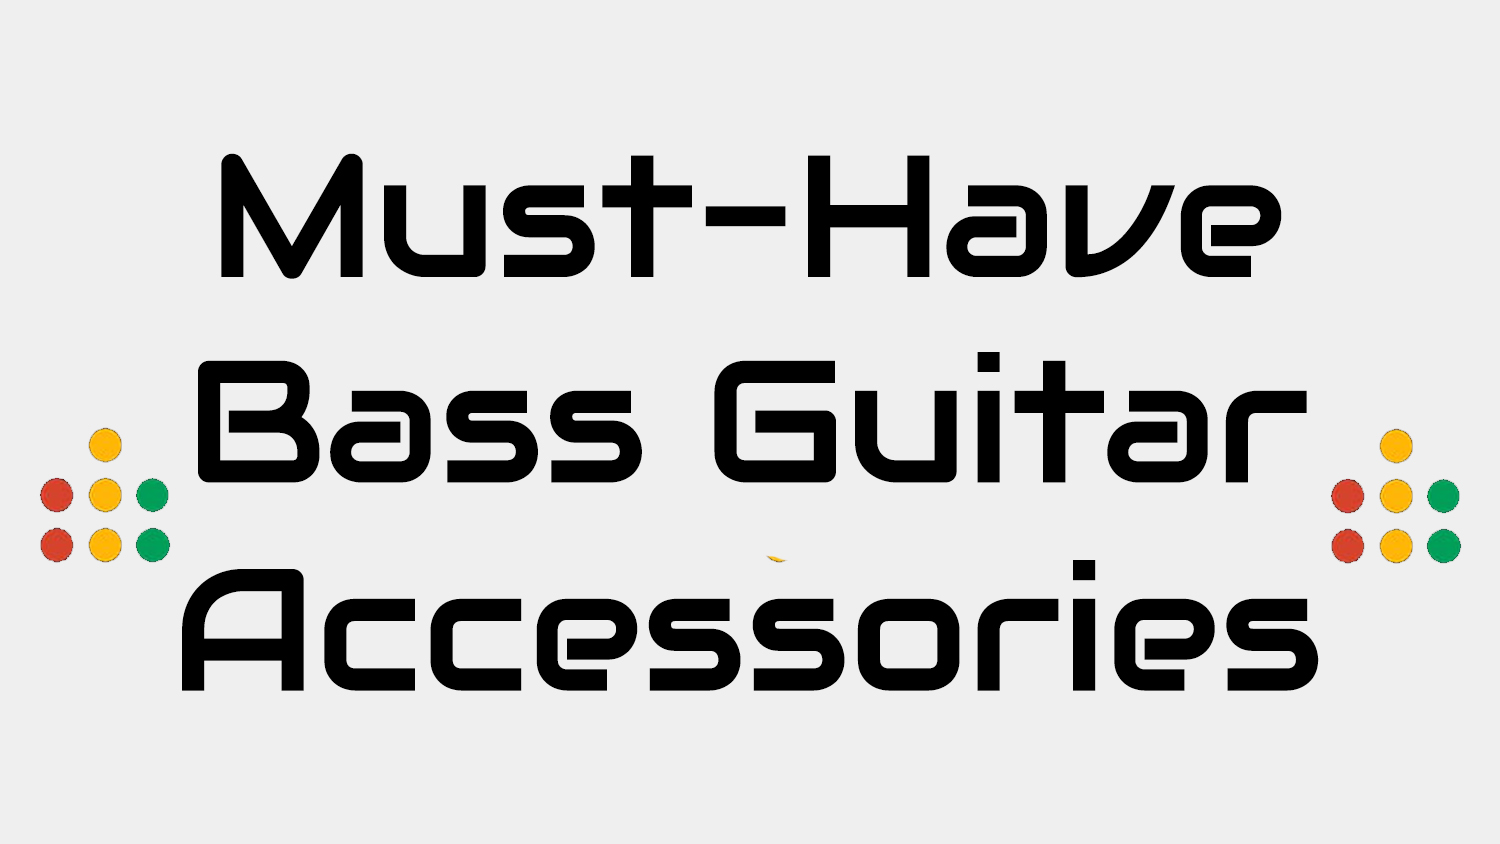  Bass Guitar Accessories